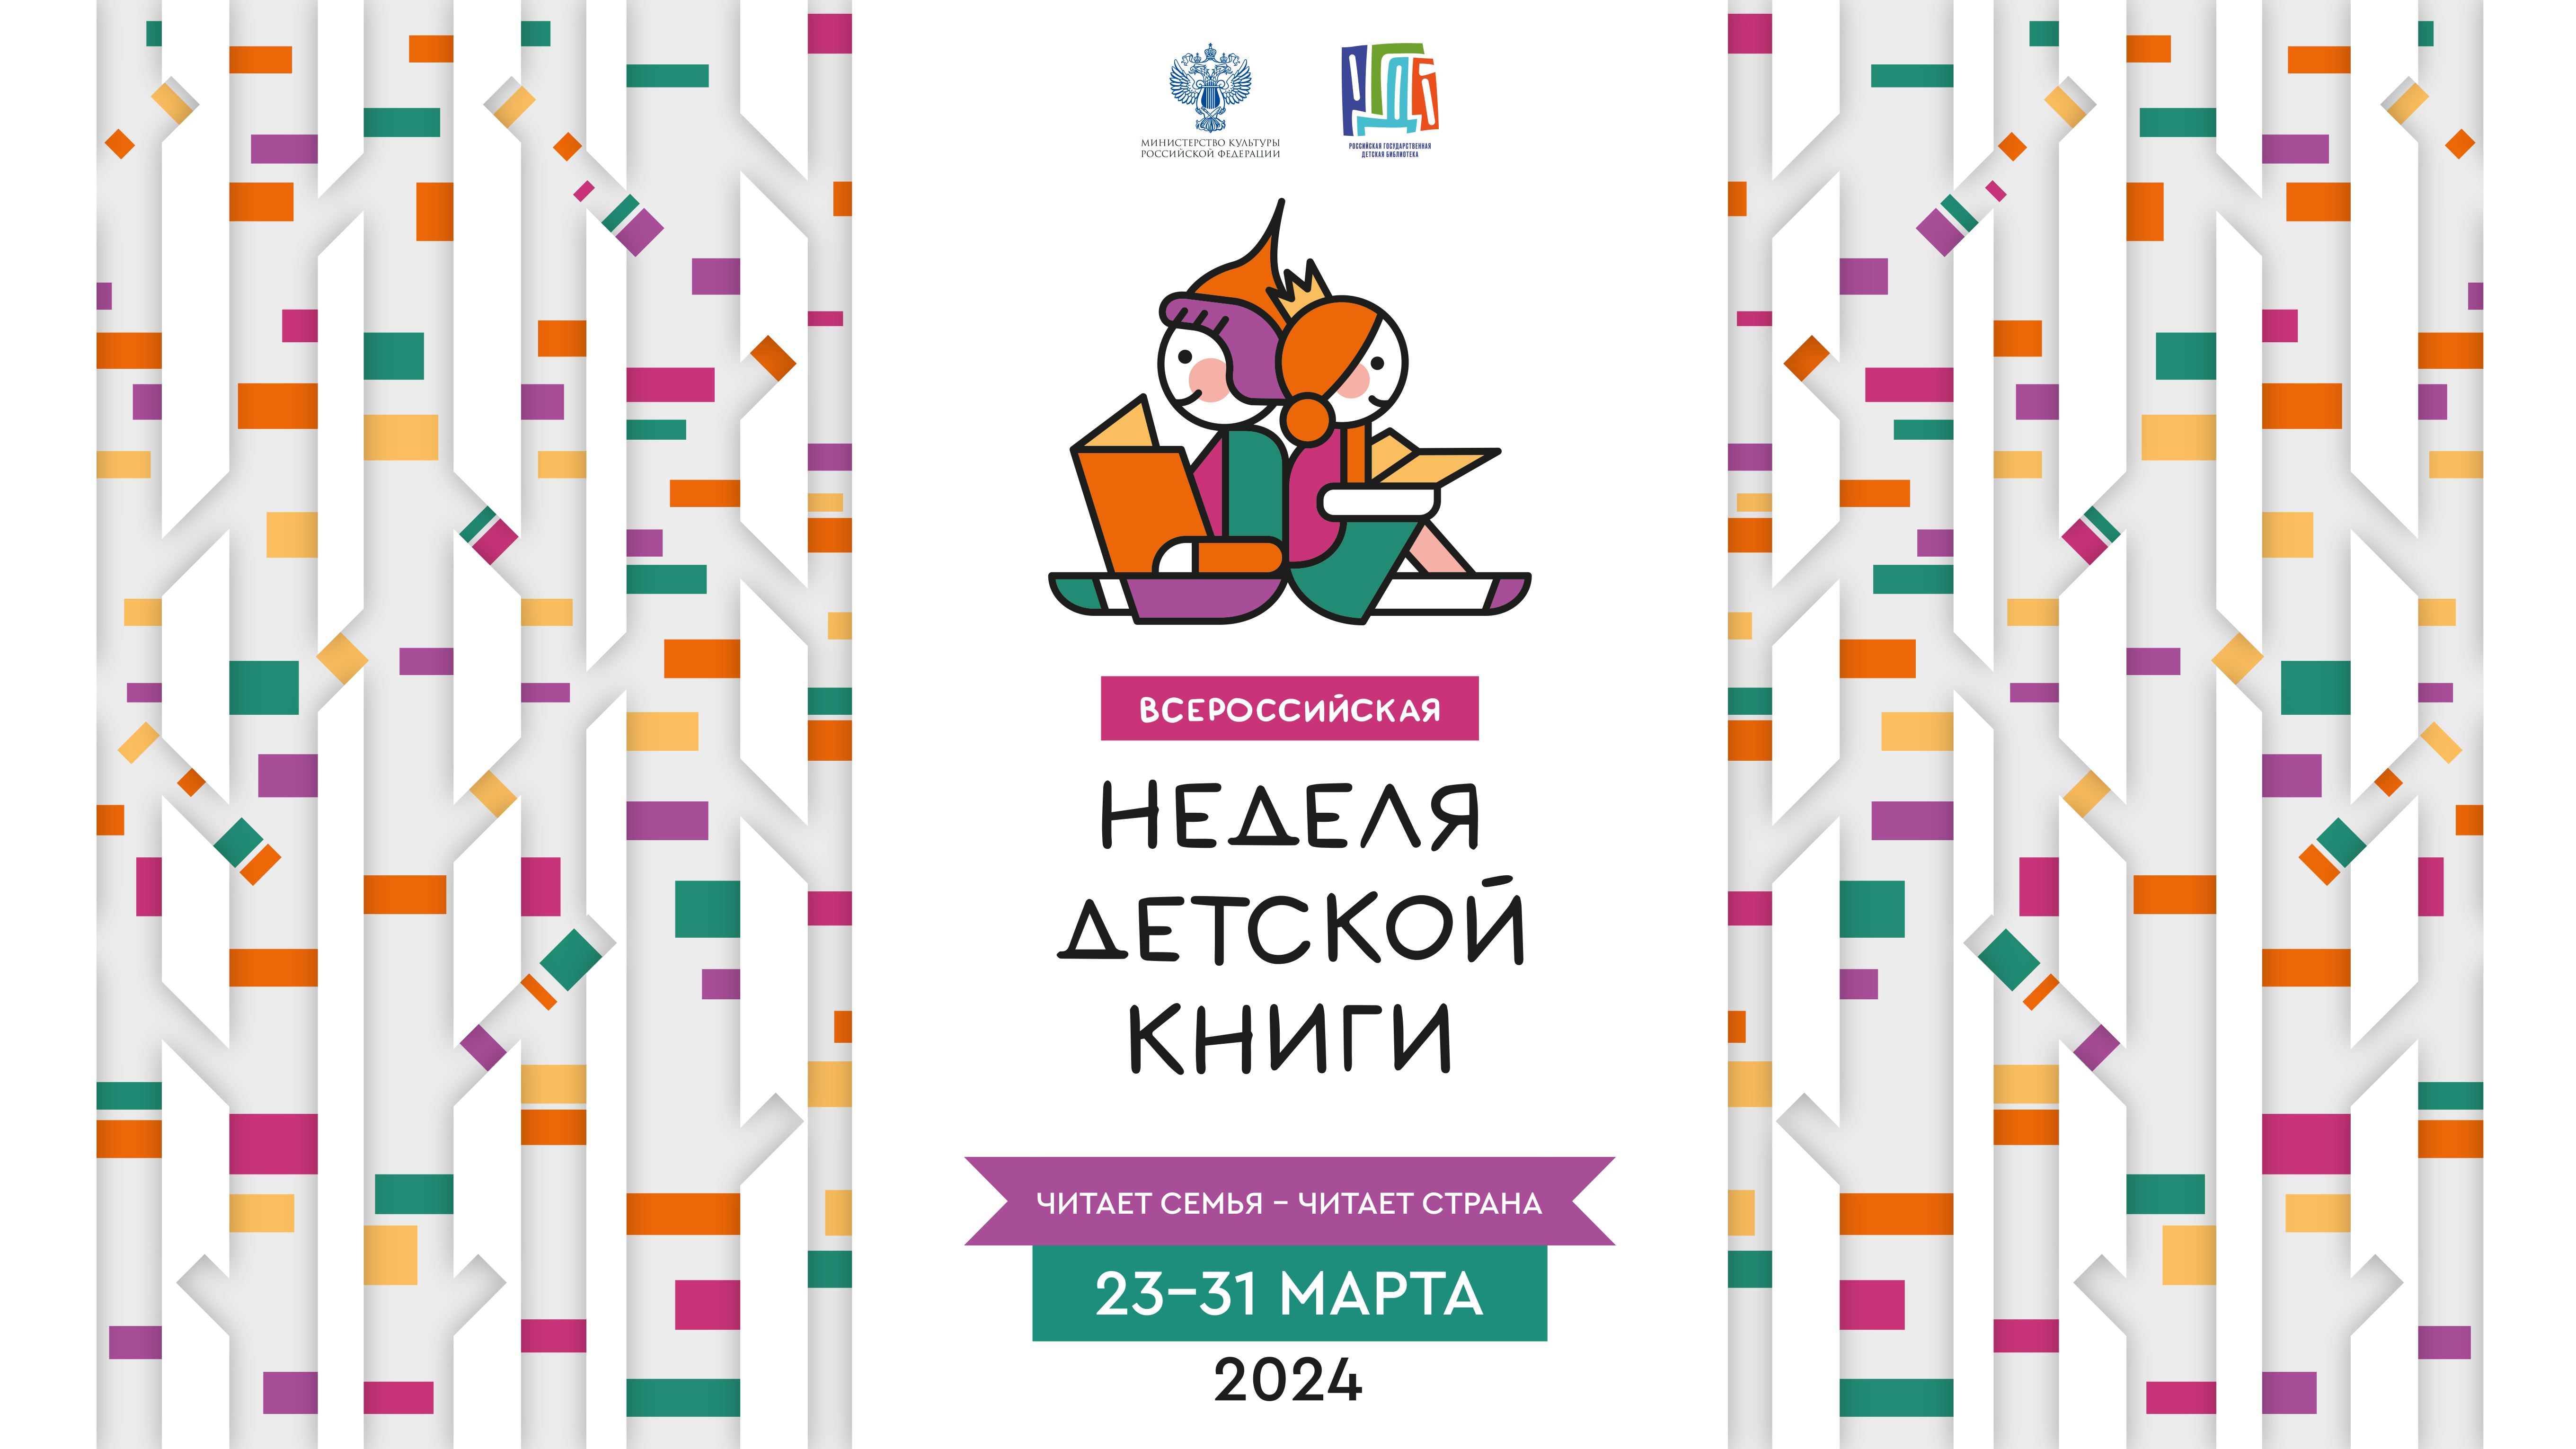 Всероссийская неделя детской книги, 23-31 марта 2024 года.